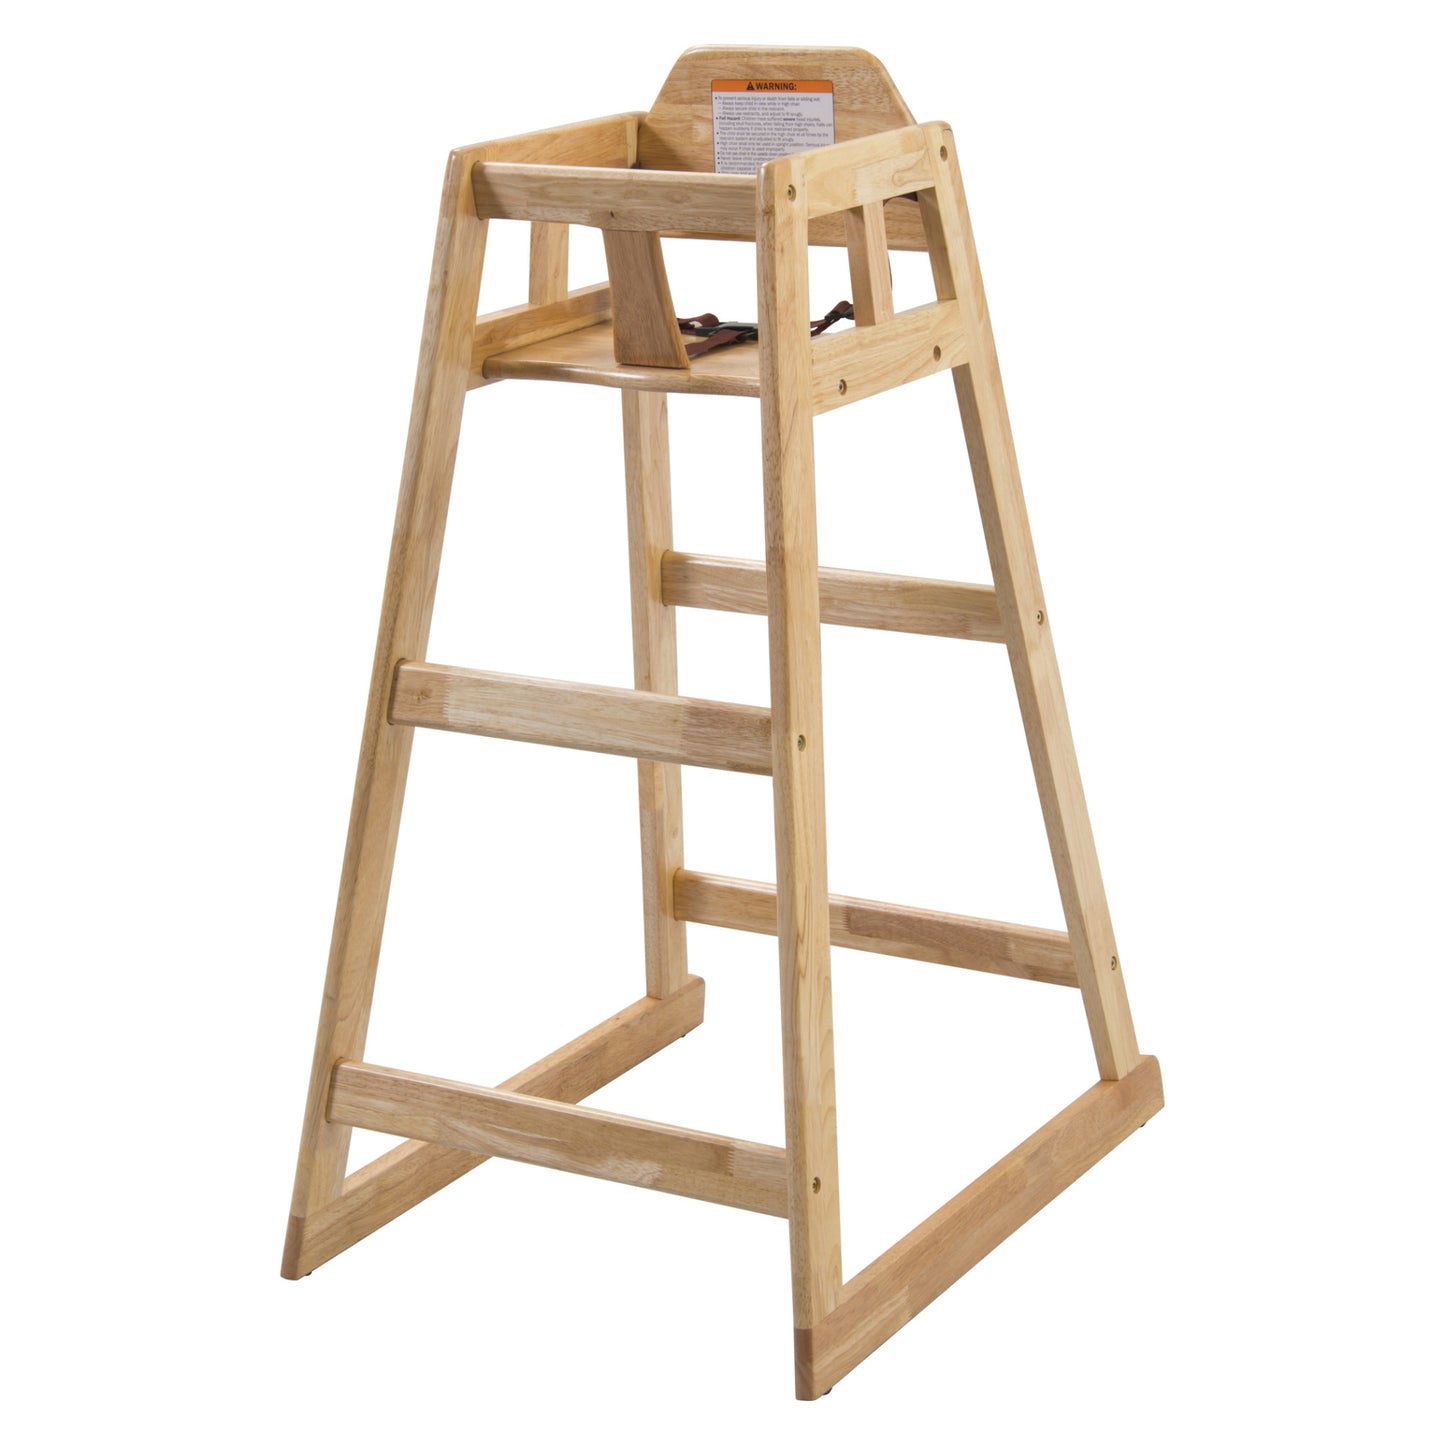 CHH-601 - Natural Wood Pub-Height High Chair